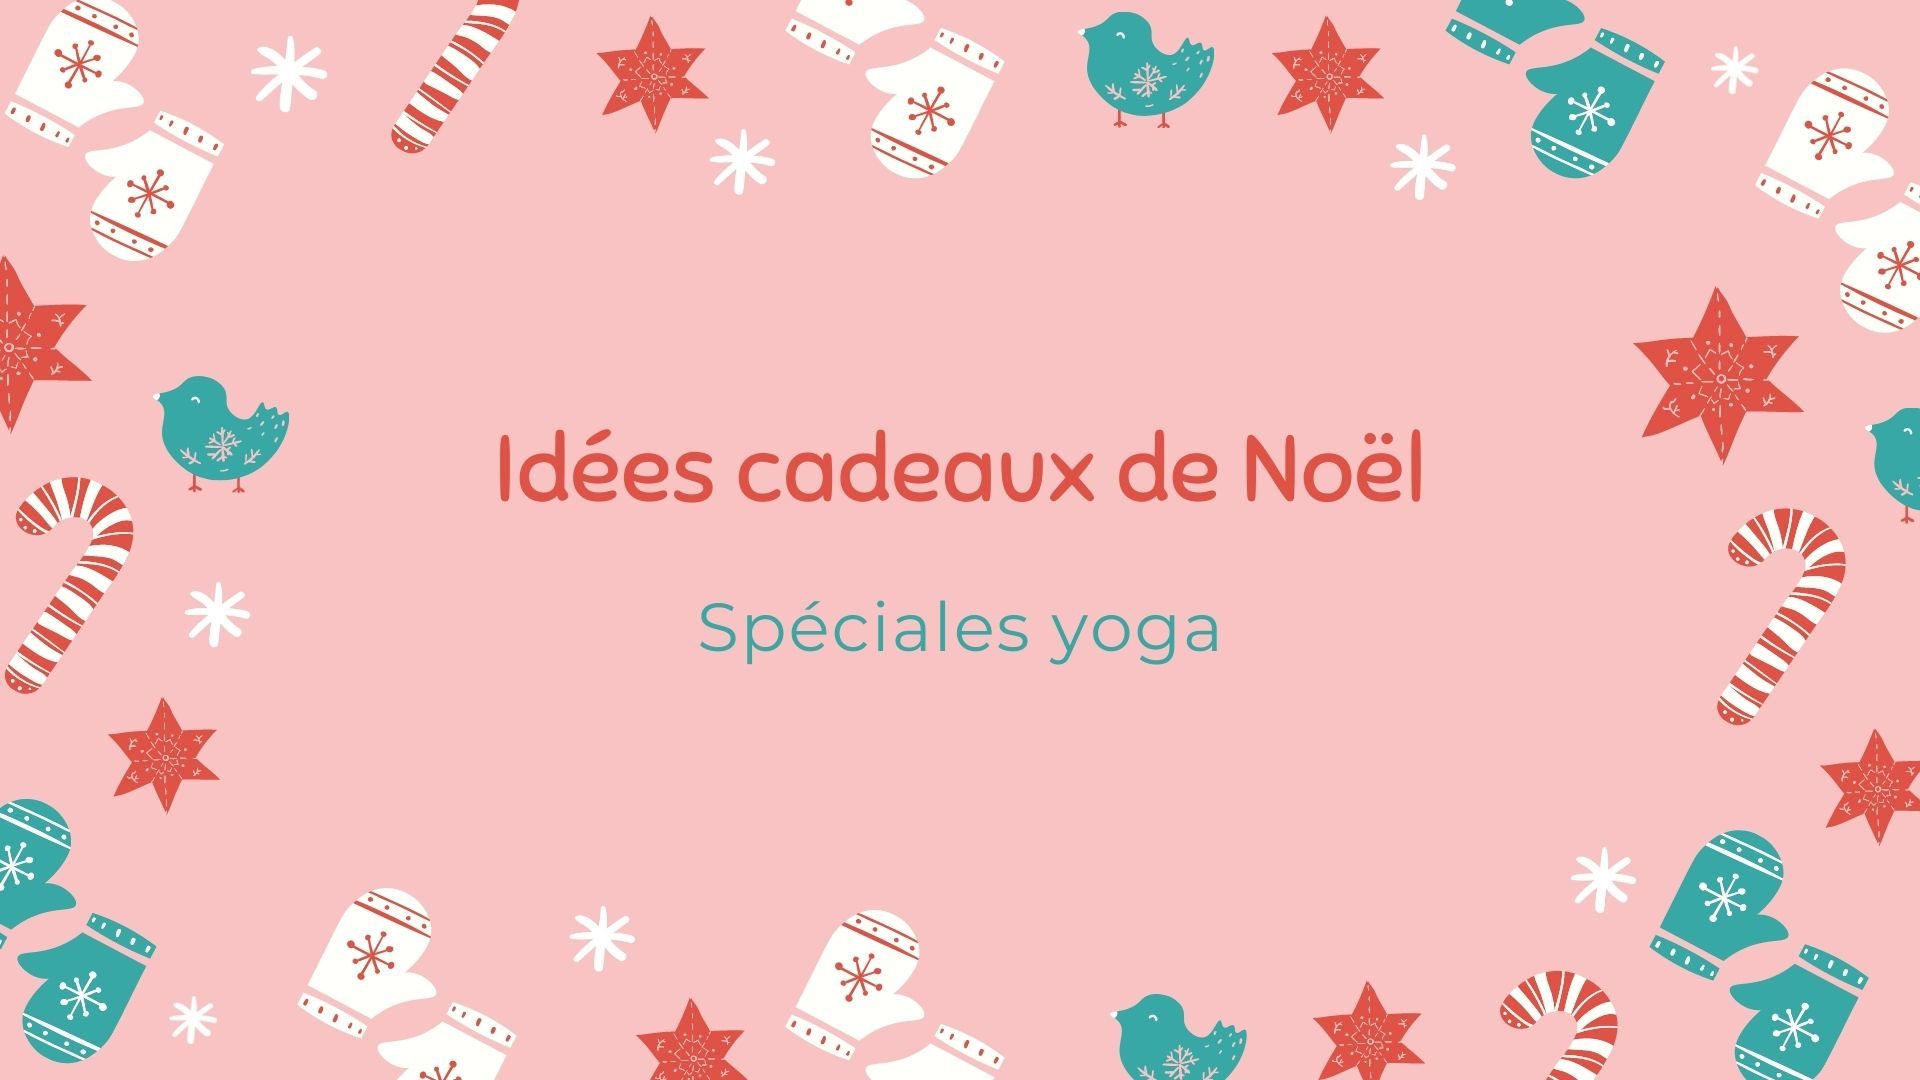 60 Idées Cadeaux de Noël Spéciales : Yoga pour tous les budgets